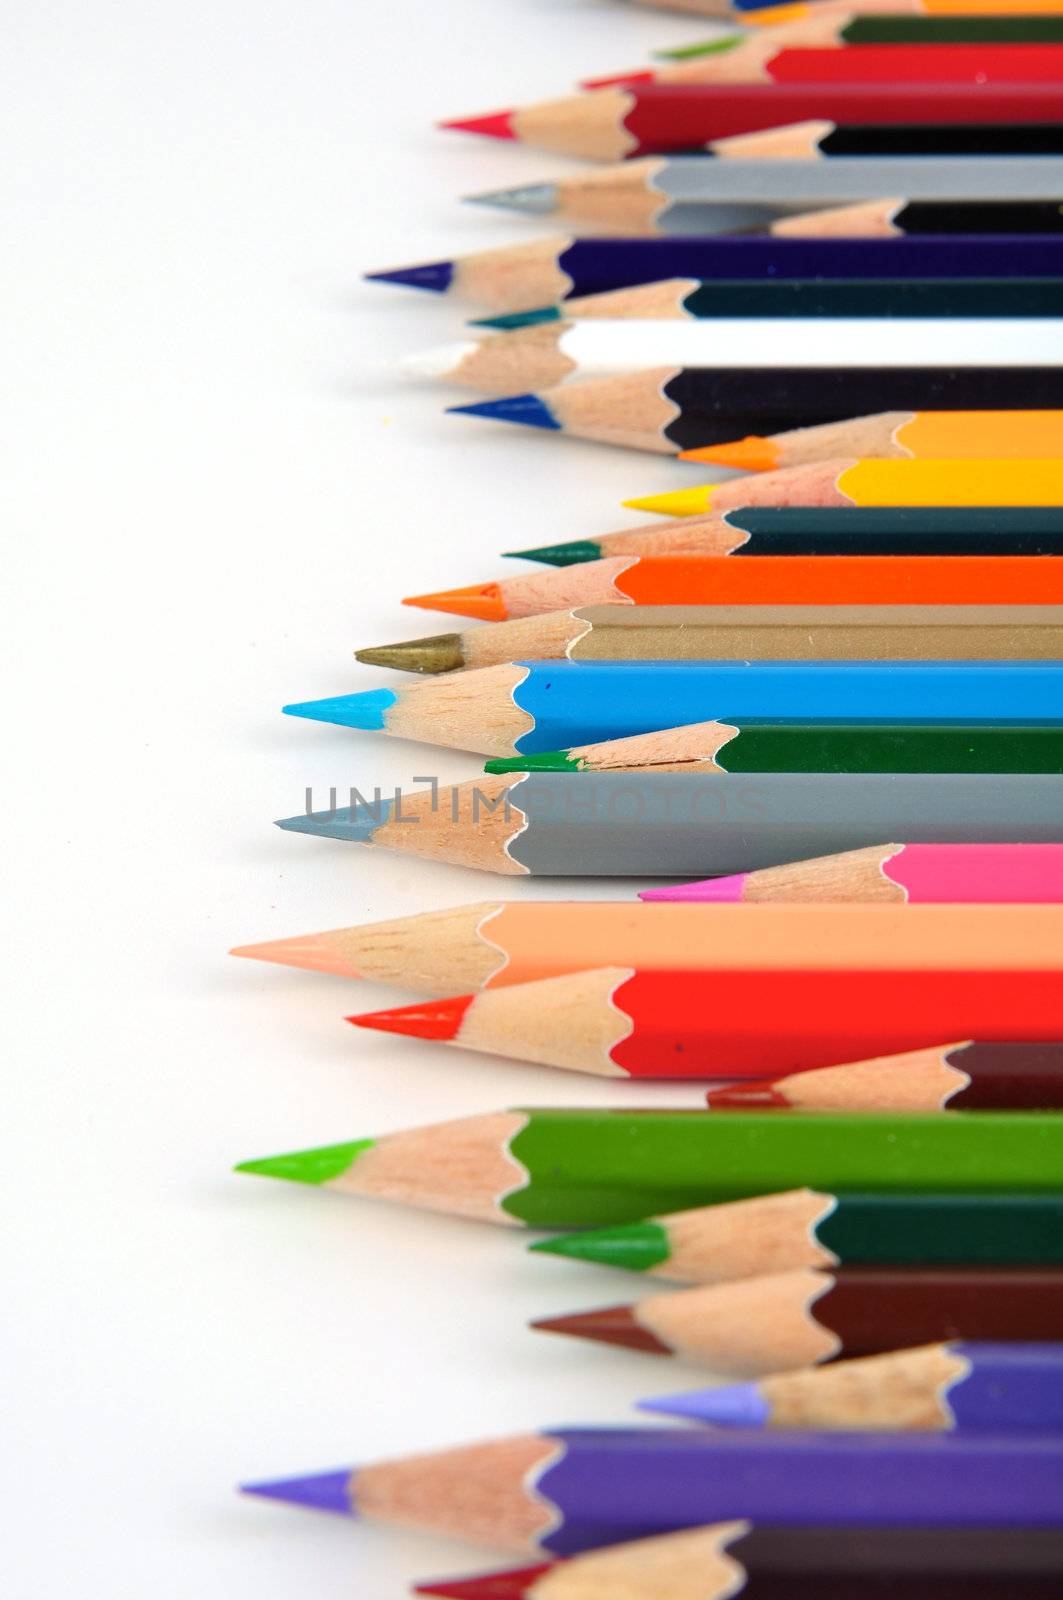 Pencil Colored